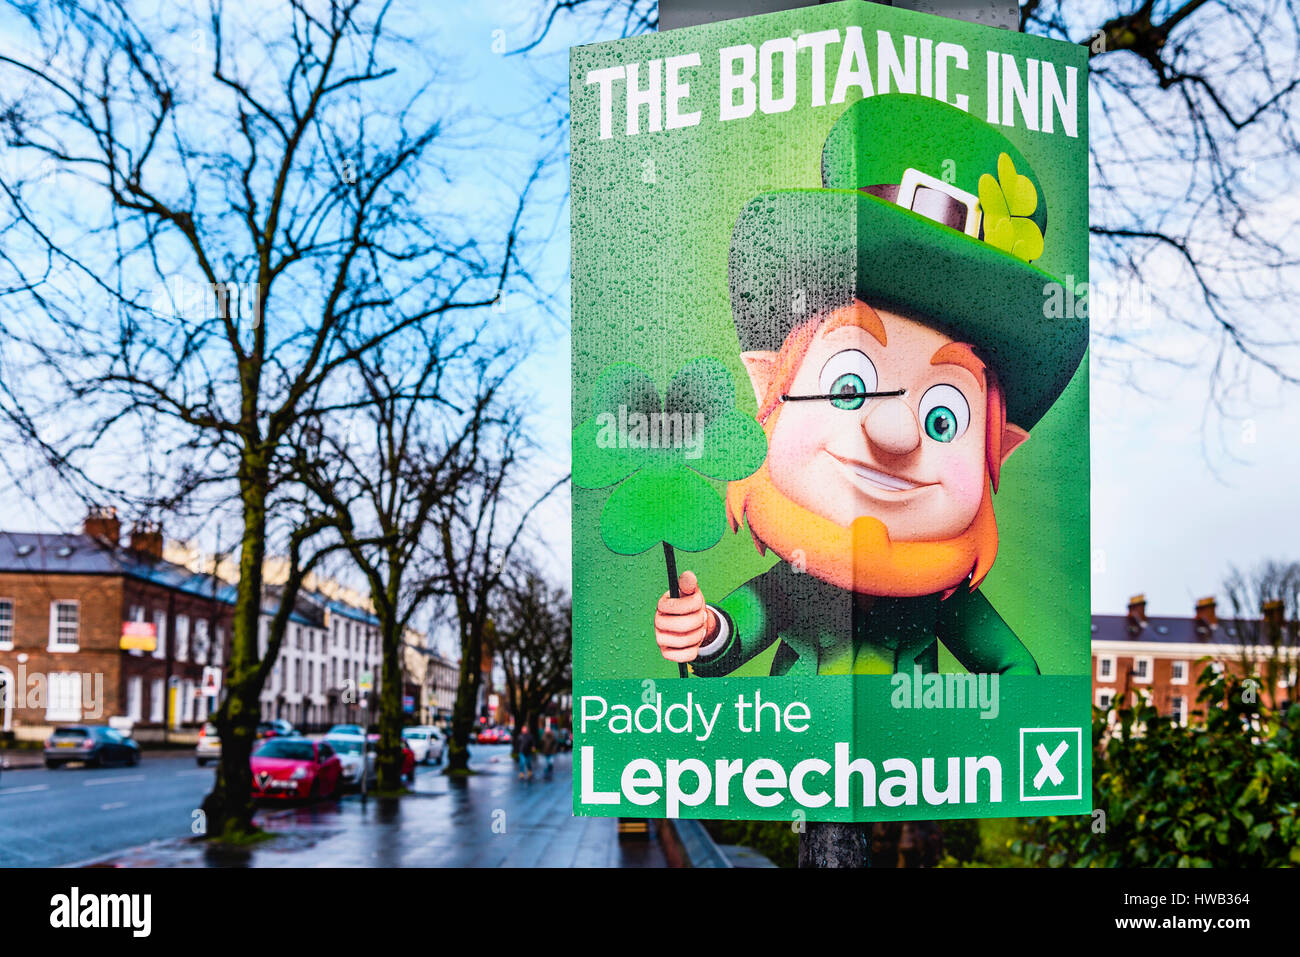 Fake-Wahlplakat vom botanischen Inn Belfast, Menschen für Paddy den Kobold stimmen zu verkaufen Stockfoto